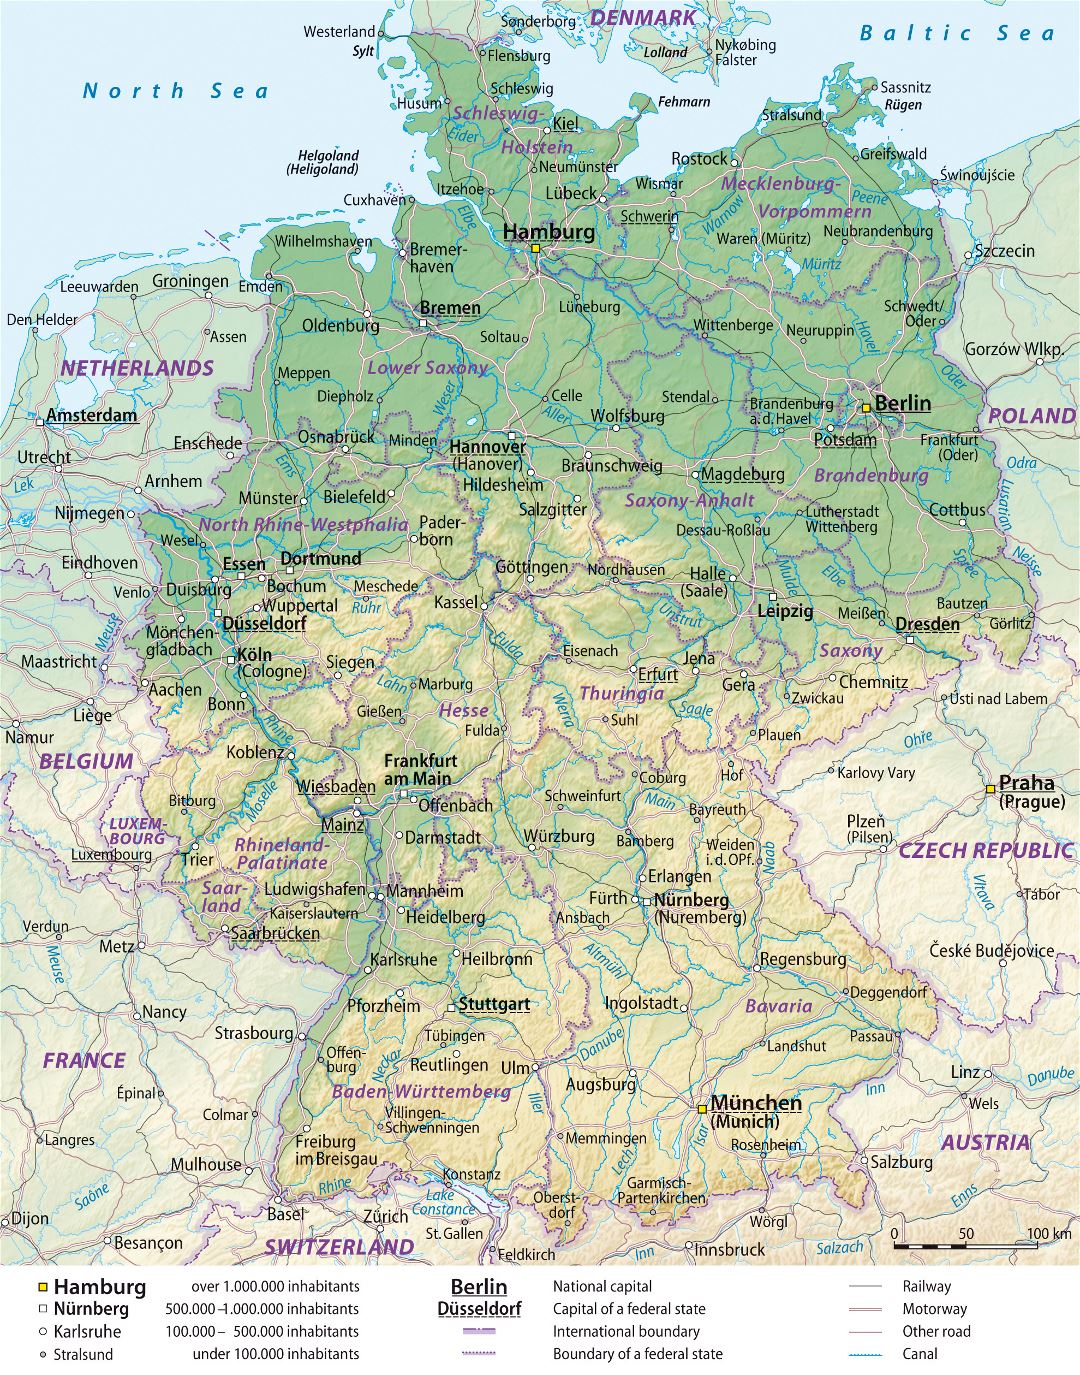 Mapa grande elevación detallado de Alemania con las divisiones administrativas, caminos y ciudades